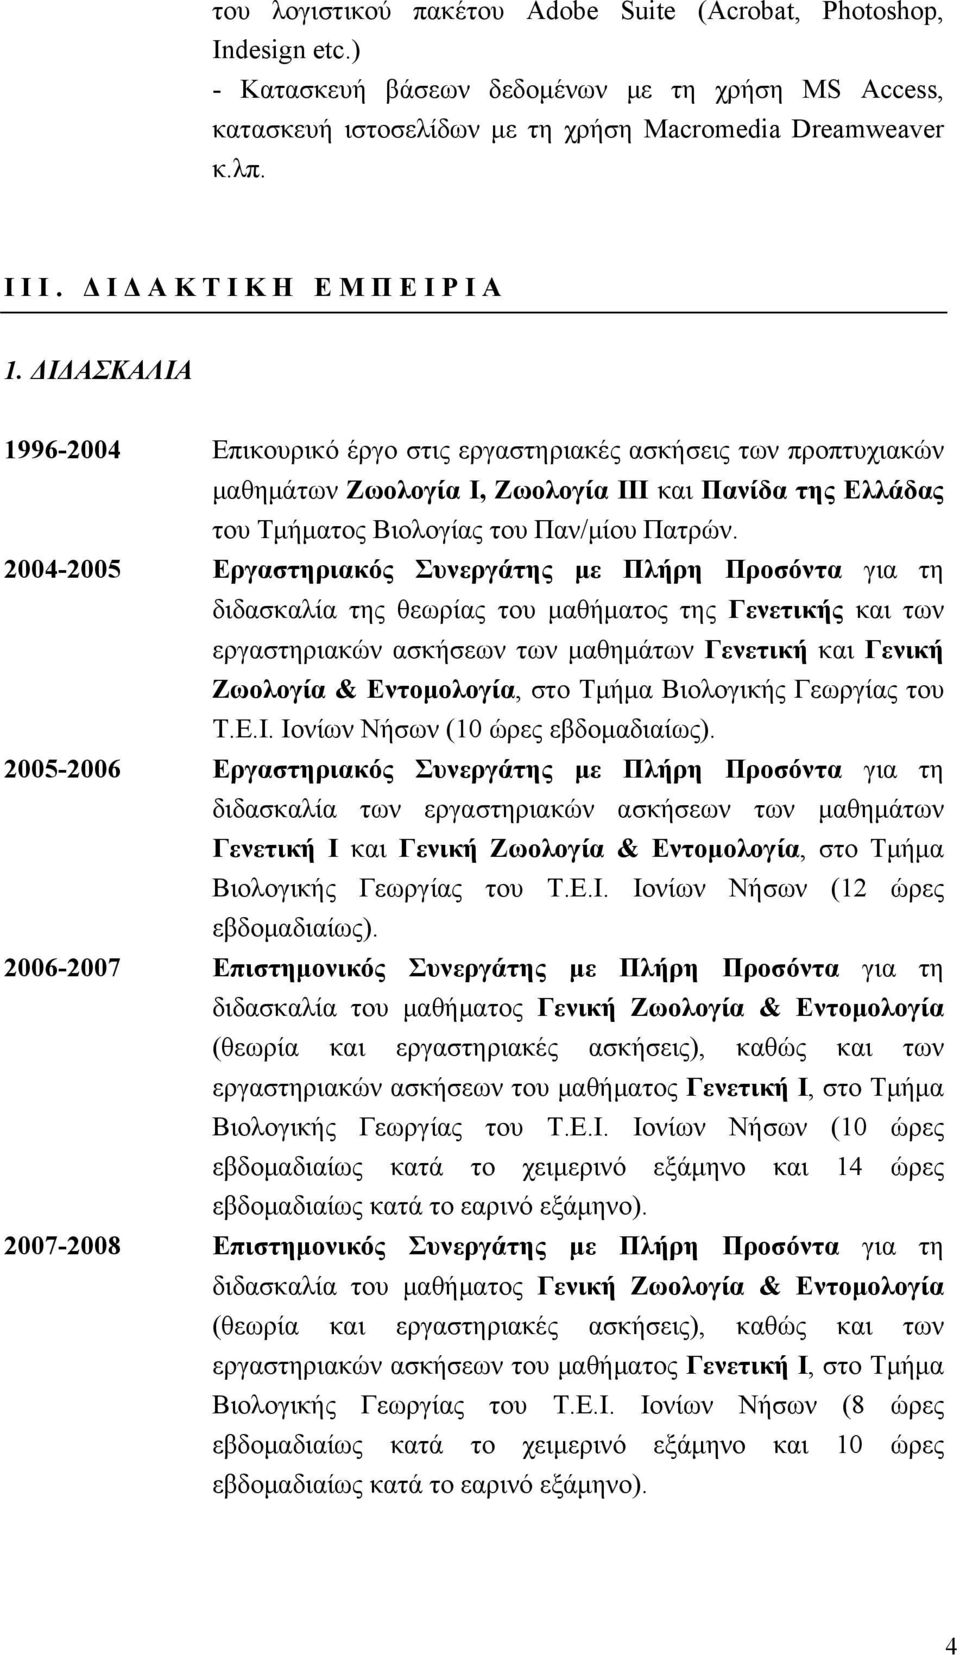 ΔΙΔΑΣΚΑΛΙΑ 1996-2004 Επικουρικό έργο στις εργαστηριακές ασκήσεις των προπτυχιακών μαθημάτων Ζωολογία Ι, Ζωολογία ΙΙΙ και Πανίδα της Ελλάδας του Τμήματος Βιολογίας του Παν/μίου Πατρών.